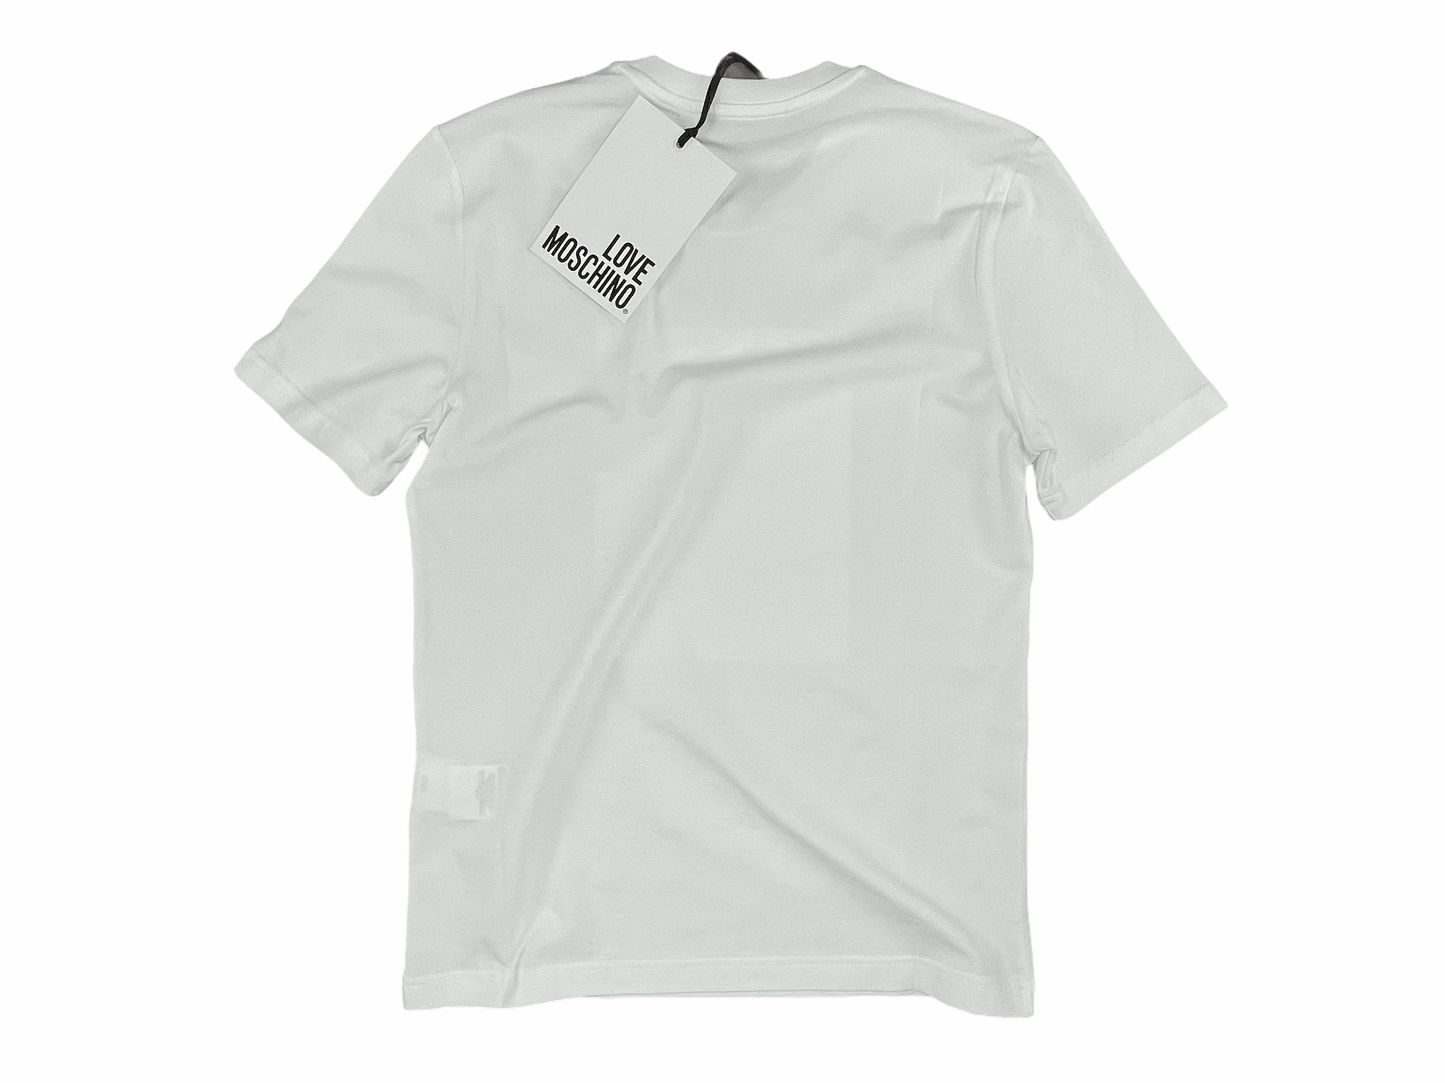 Love Moschino Airlines Travel White T Shirt Medium—Genuine Design luxury consignment